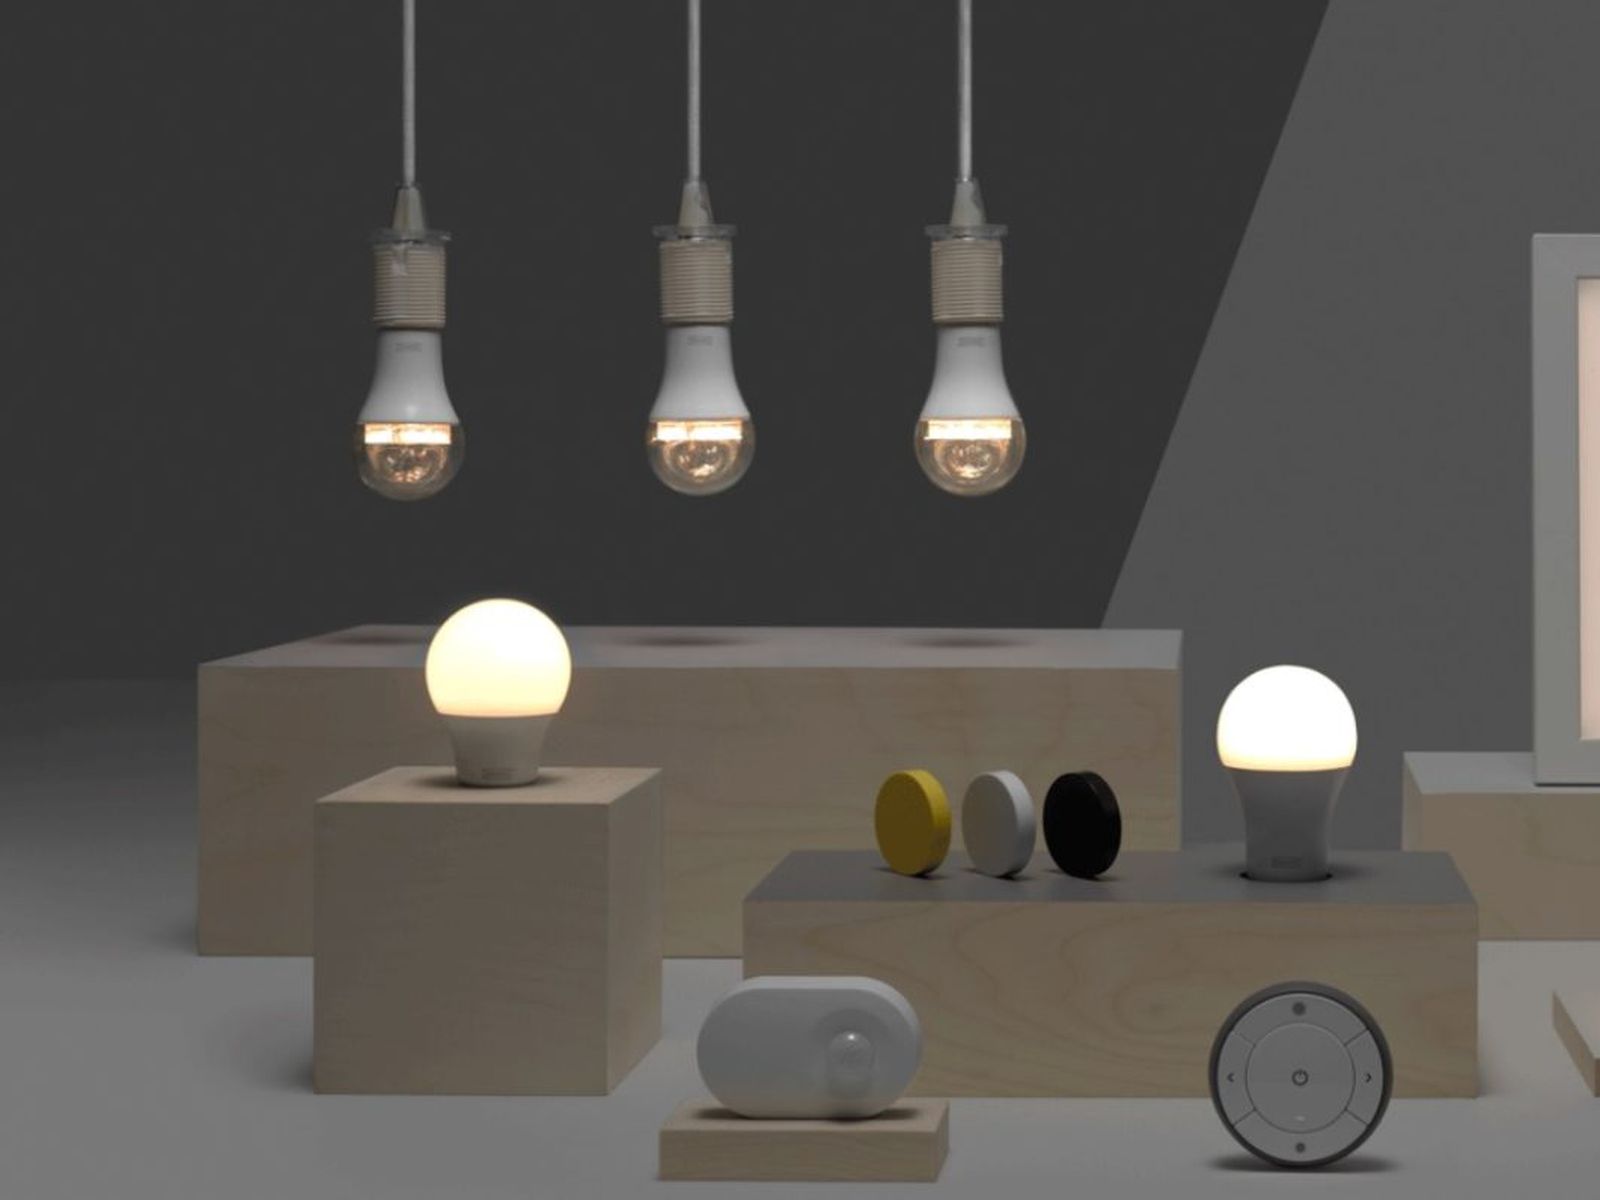 ikea launches homekit support for tradfri smart lighting system macrumors